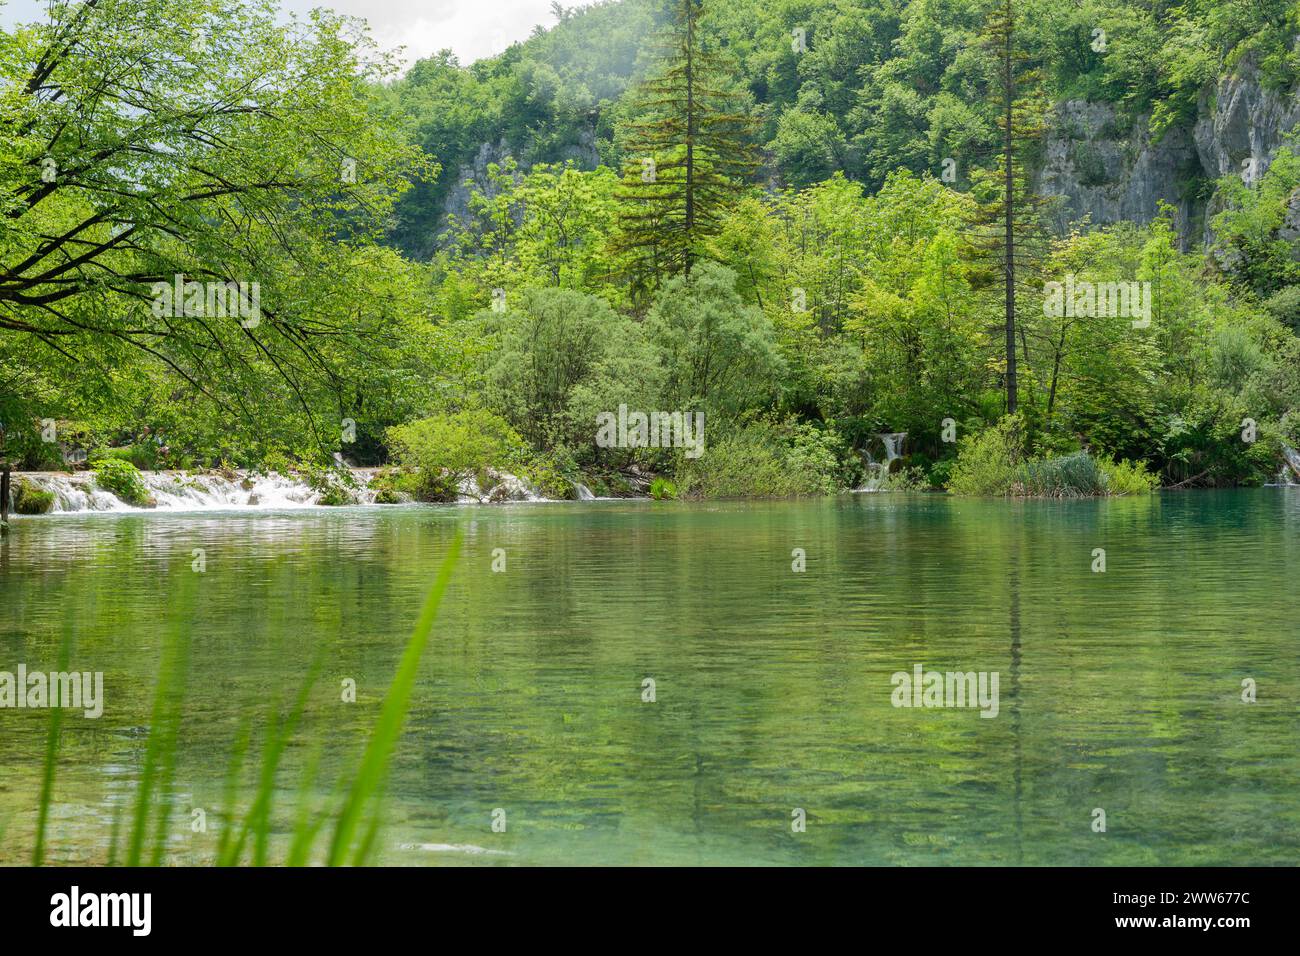 Grüner üppiger Wald am Rand eines ruhigen kleinen Sees im Nationalpark Plitvicer Seen in Kroatien.-HDR.dng Stockfoto